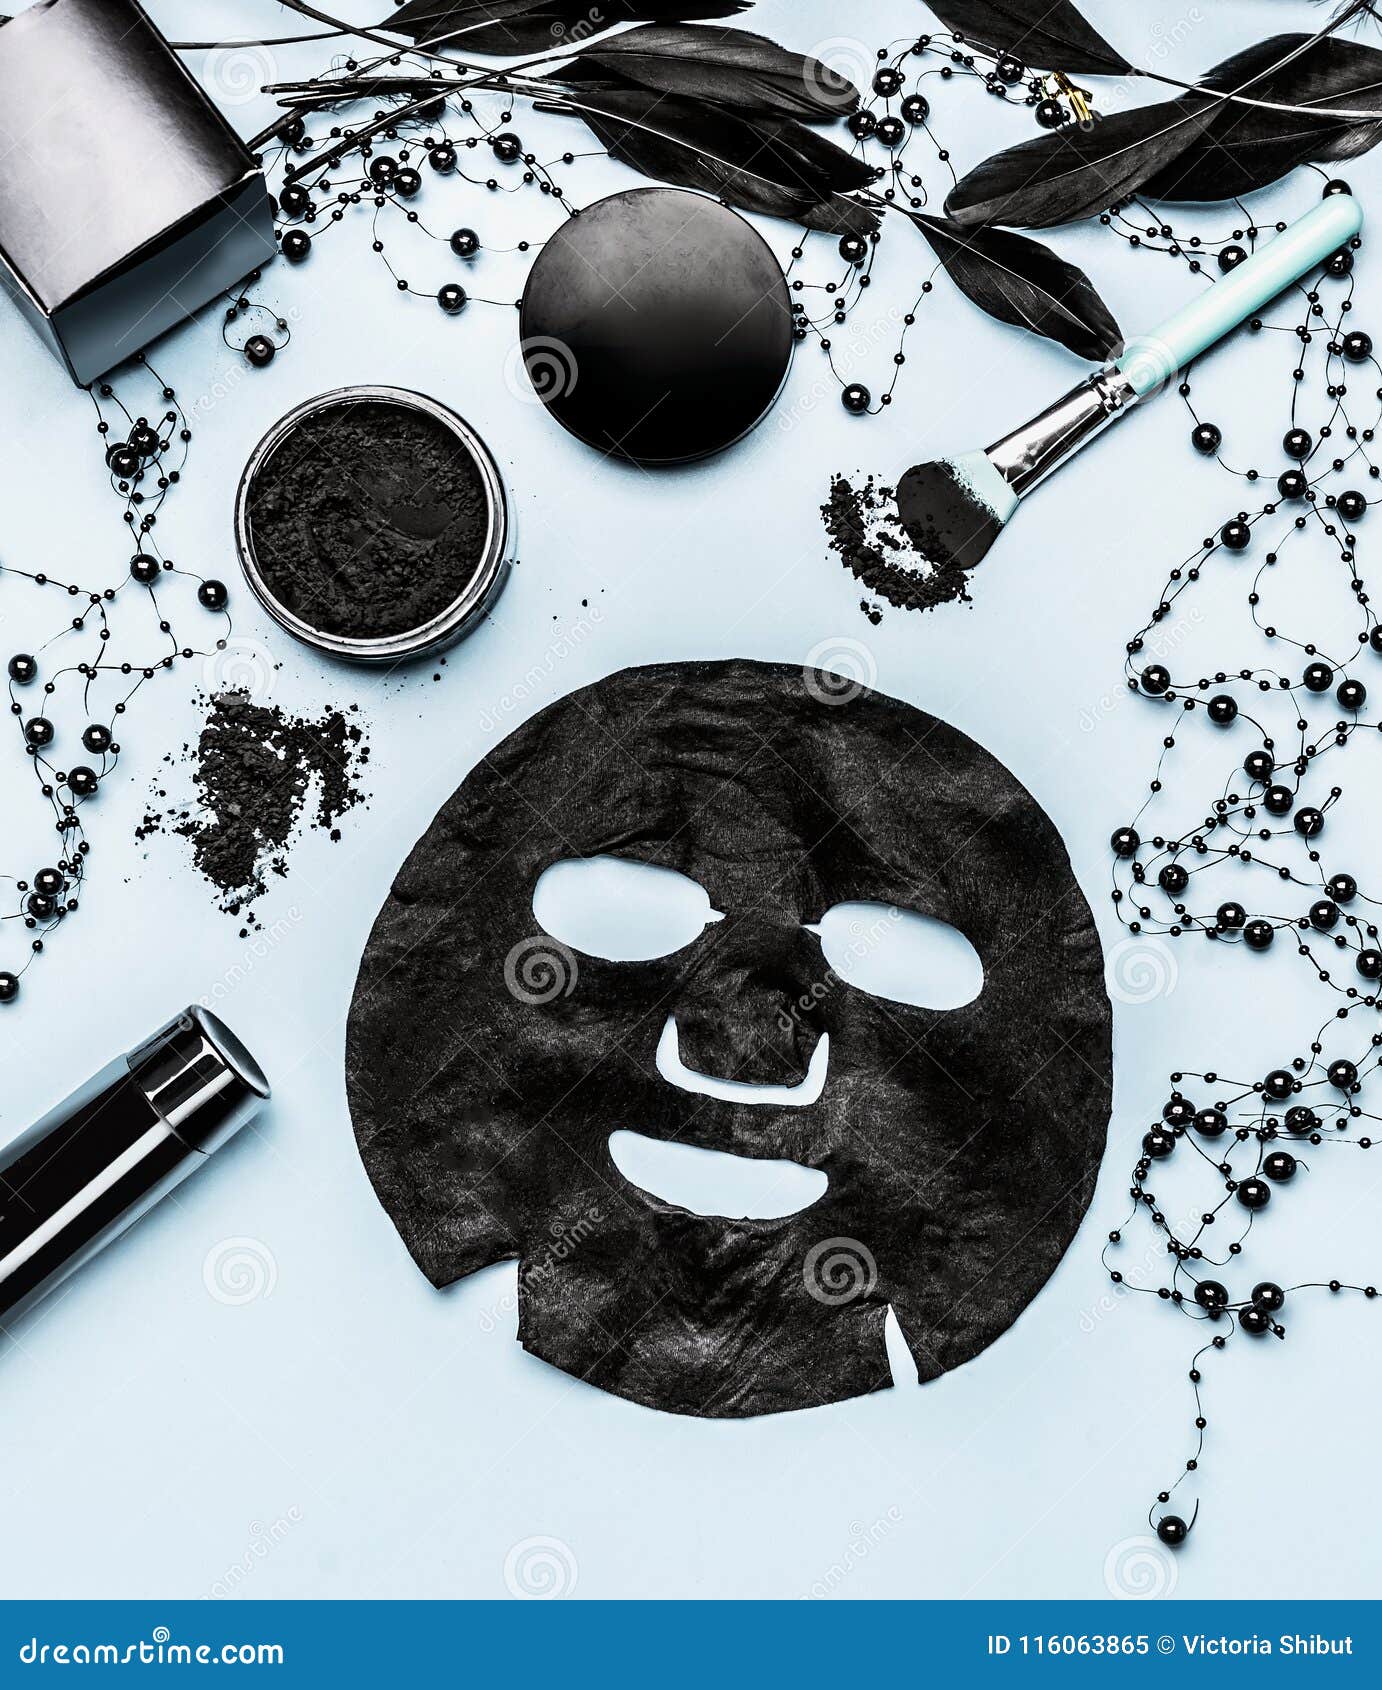 Черная маска косметика. Черная тканевая маска косметика. Mockup косметическая маска. Косметика из бумаги маски. Черные маски с узорами.